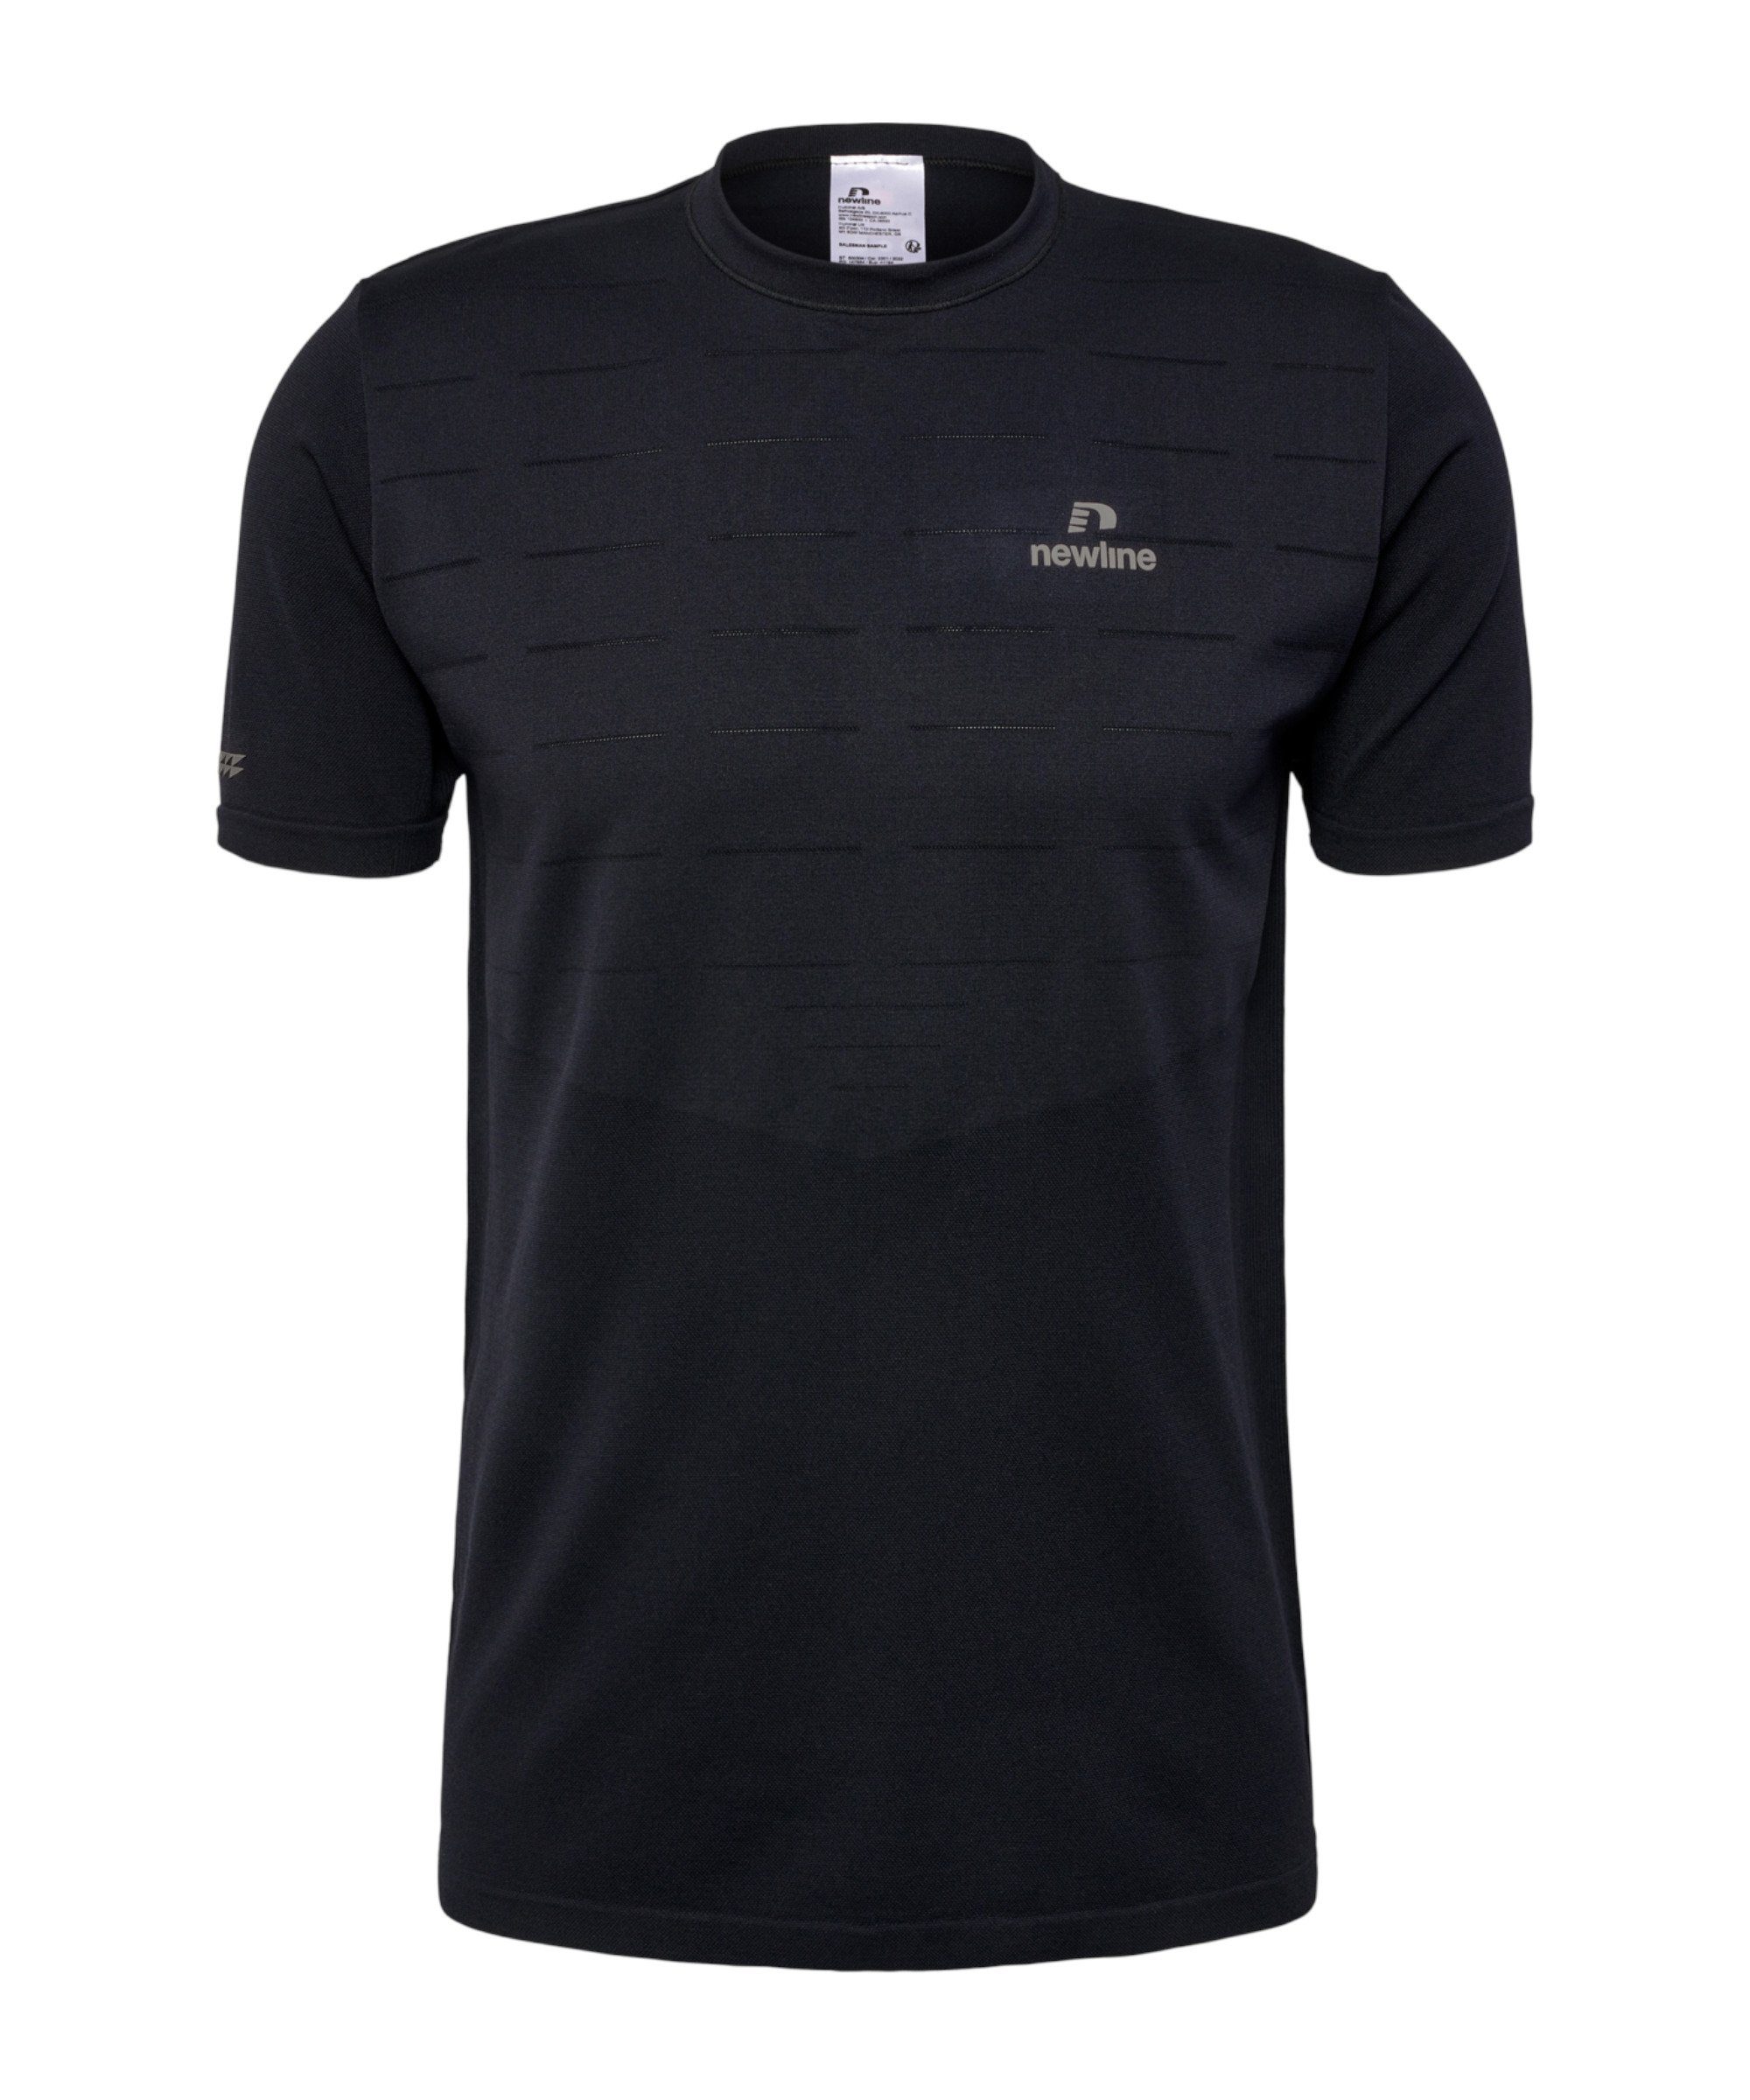 Seamless T-Shirt nwlRIVERSIDE schwarz NewLine T-Shirt default